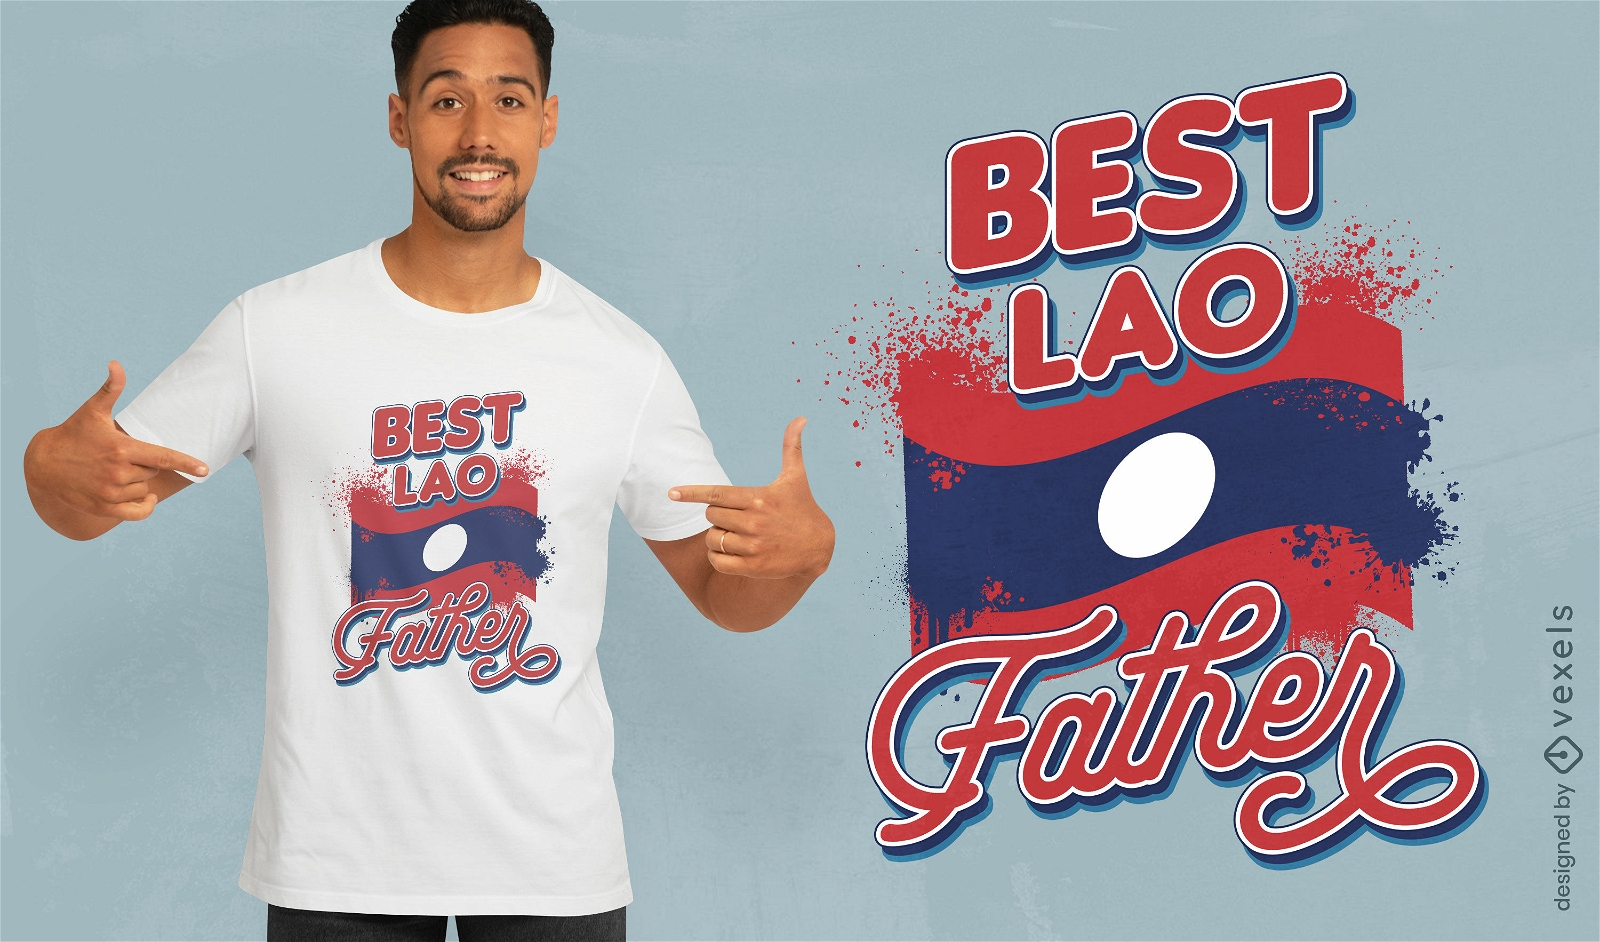 Melhor design de camiseta do pai do Laos